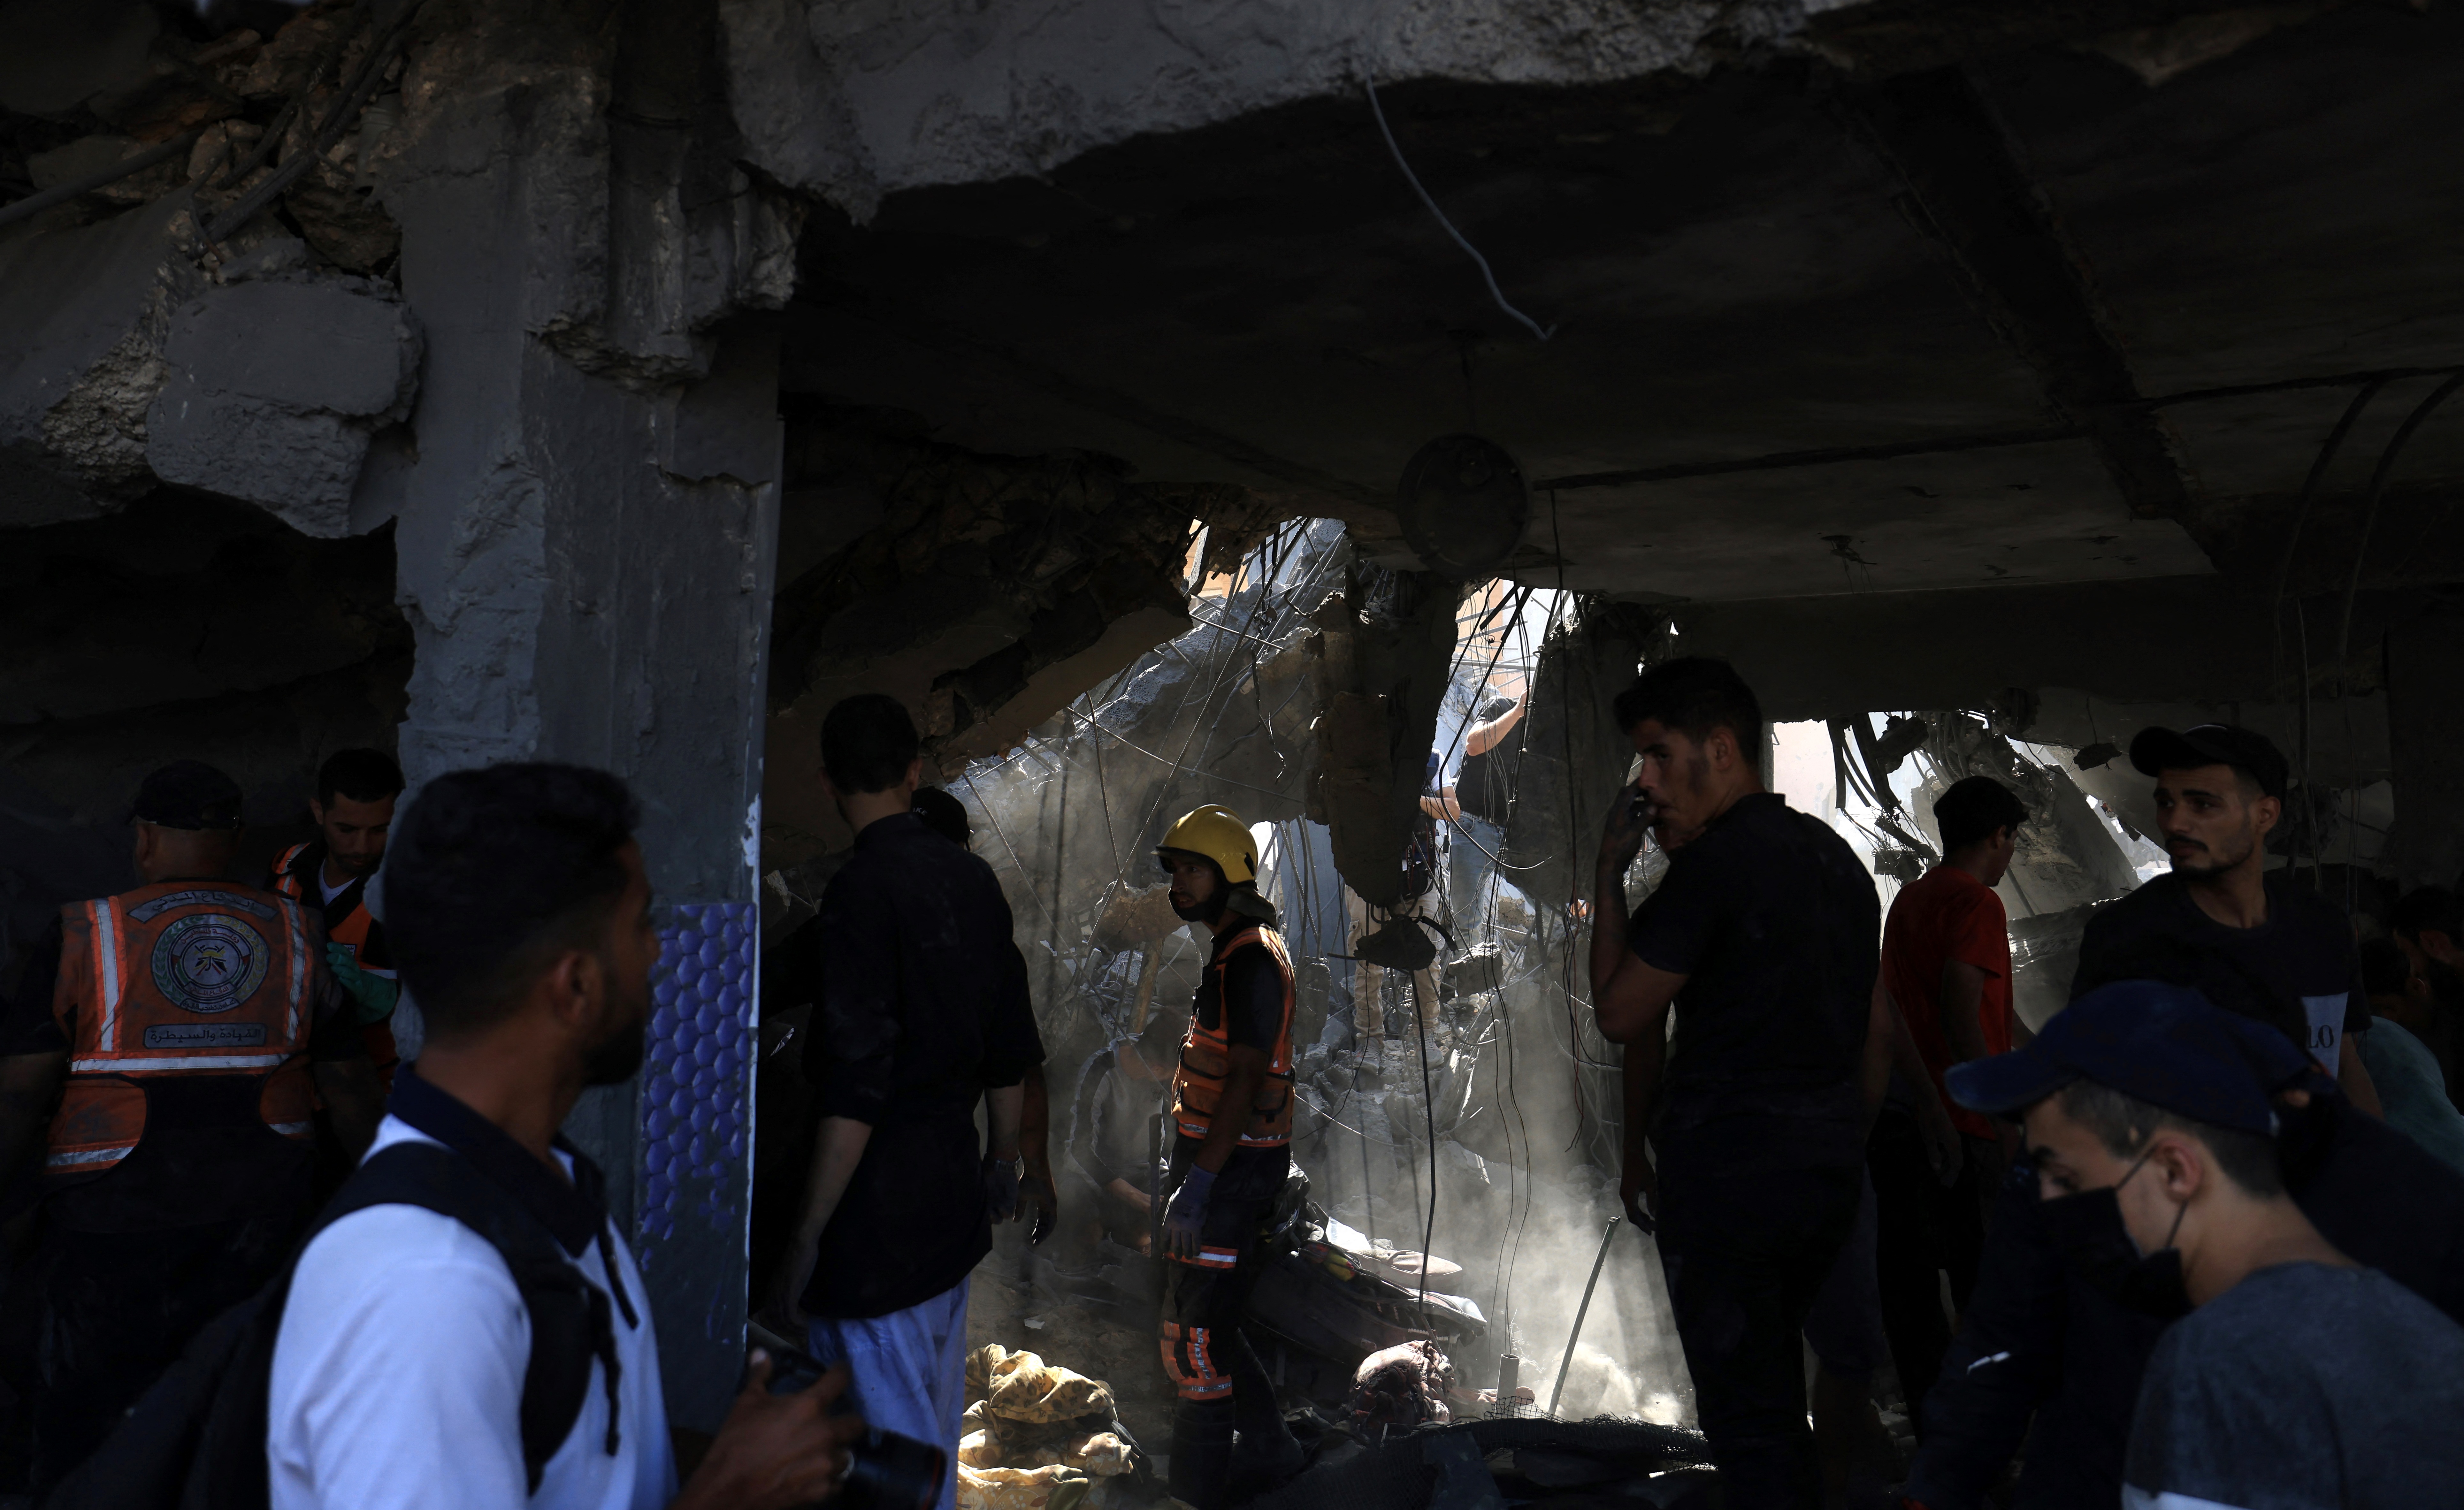 ΗΠΑ: Δεν υπάρχουν πληροφορίες ότι η Χαμάς παρεμποδίζει την ροή της ανθρωπιστικής βοήθειας